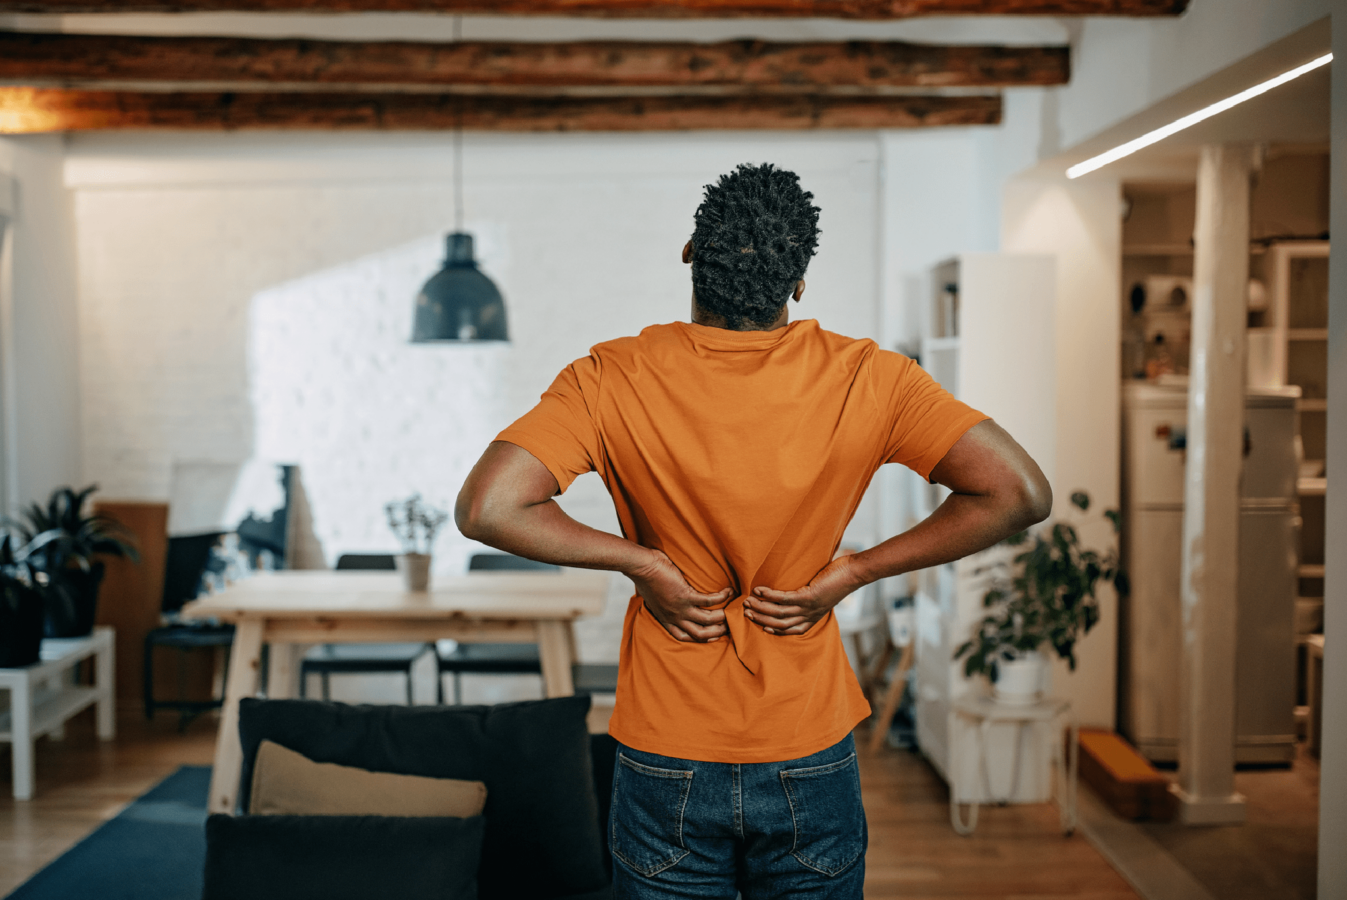 Best Exercises for Back Pain Newsletter